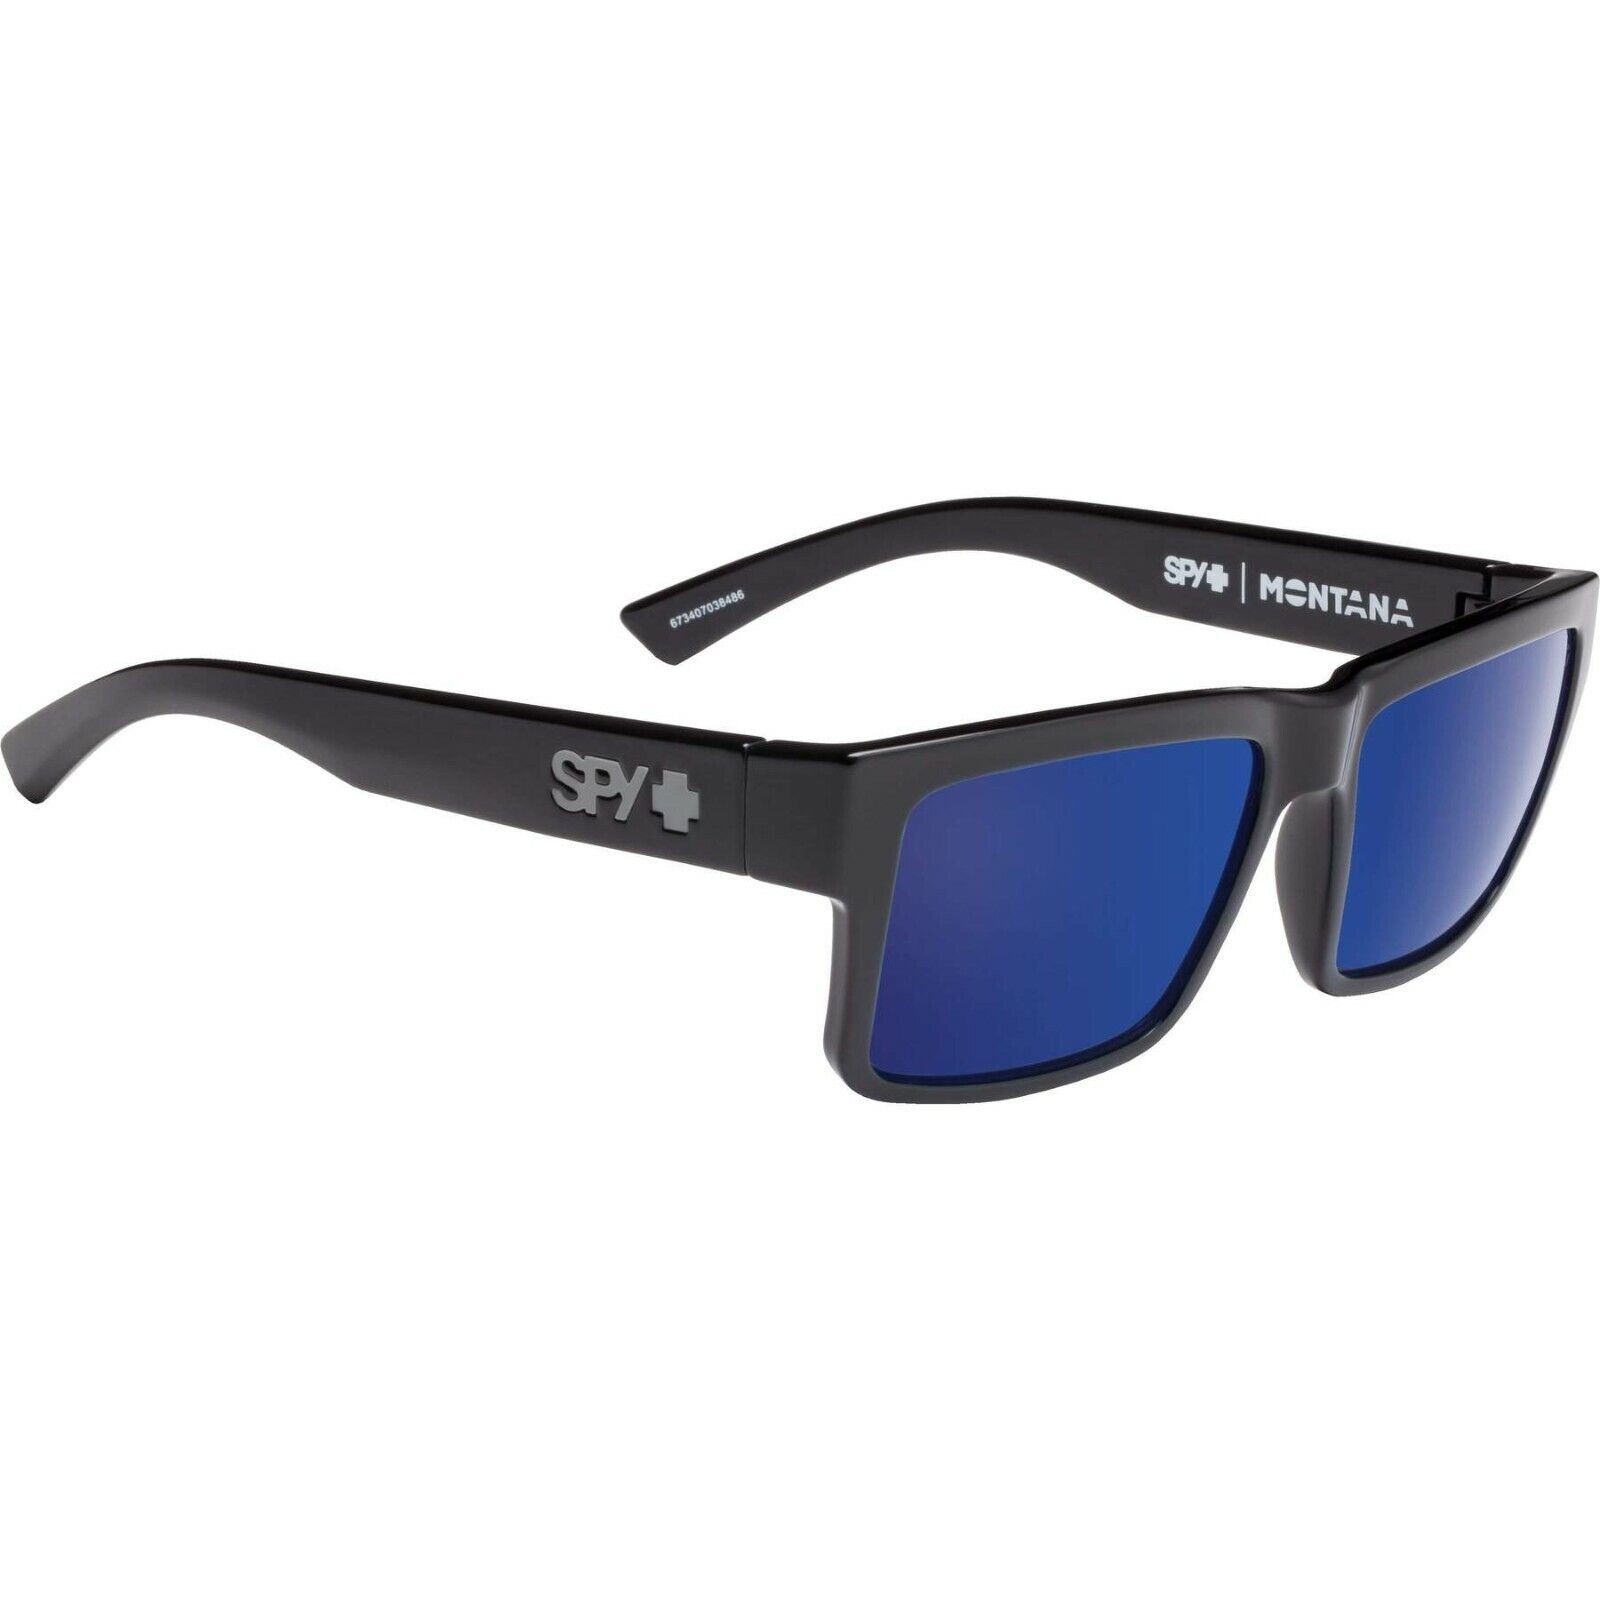 SPY Optic eBay Sunglasses Black | 3DAY Green SHIP - MONTANA Blue Gloss Polarized Gray